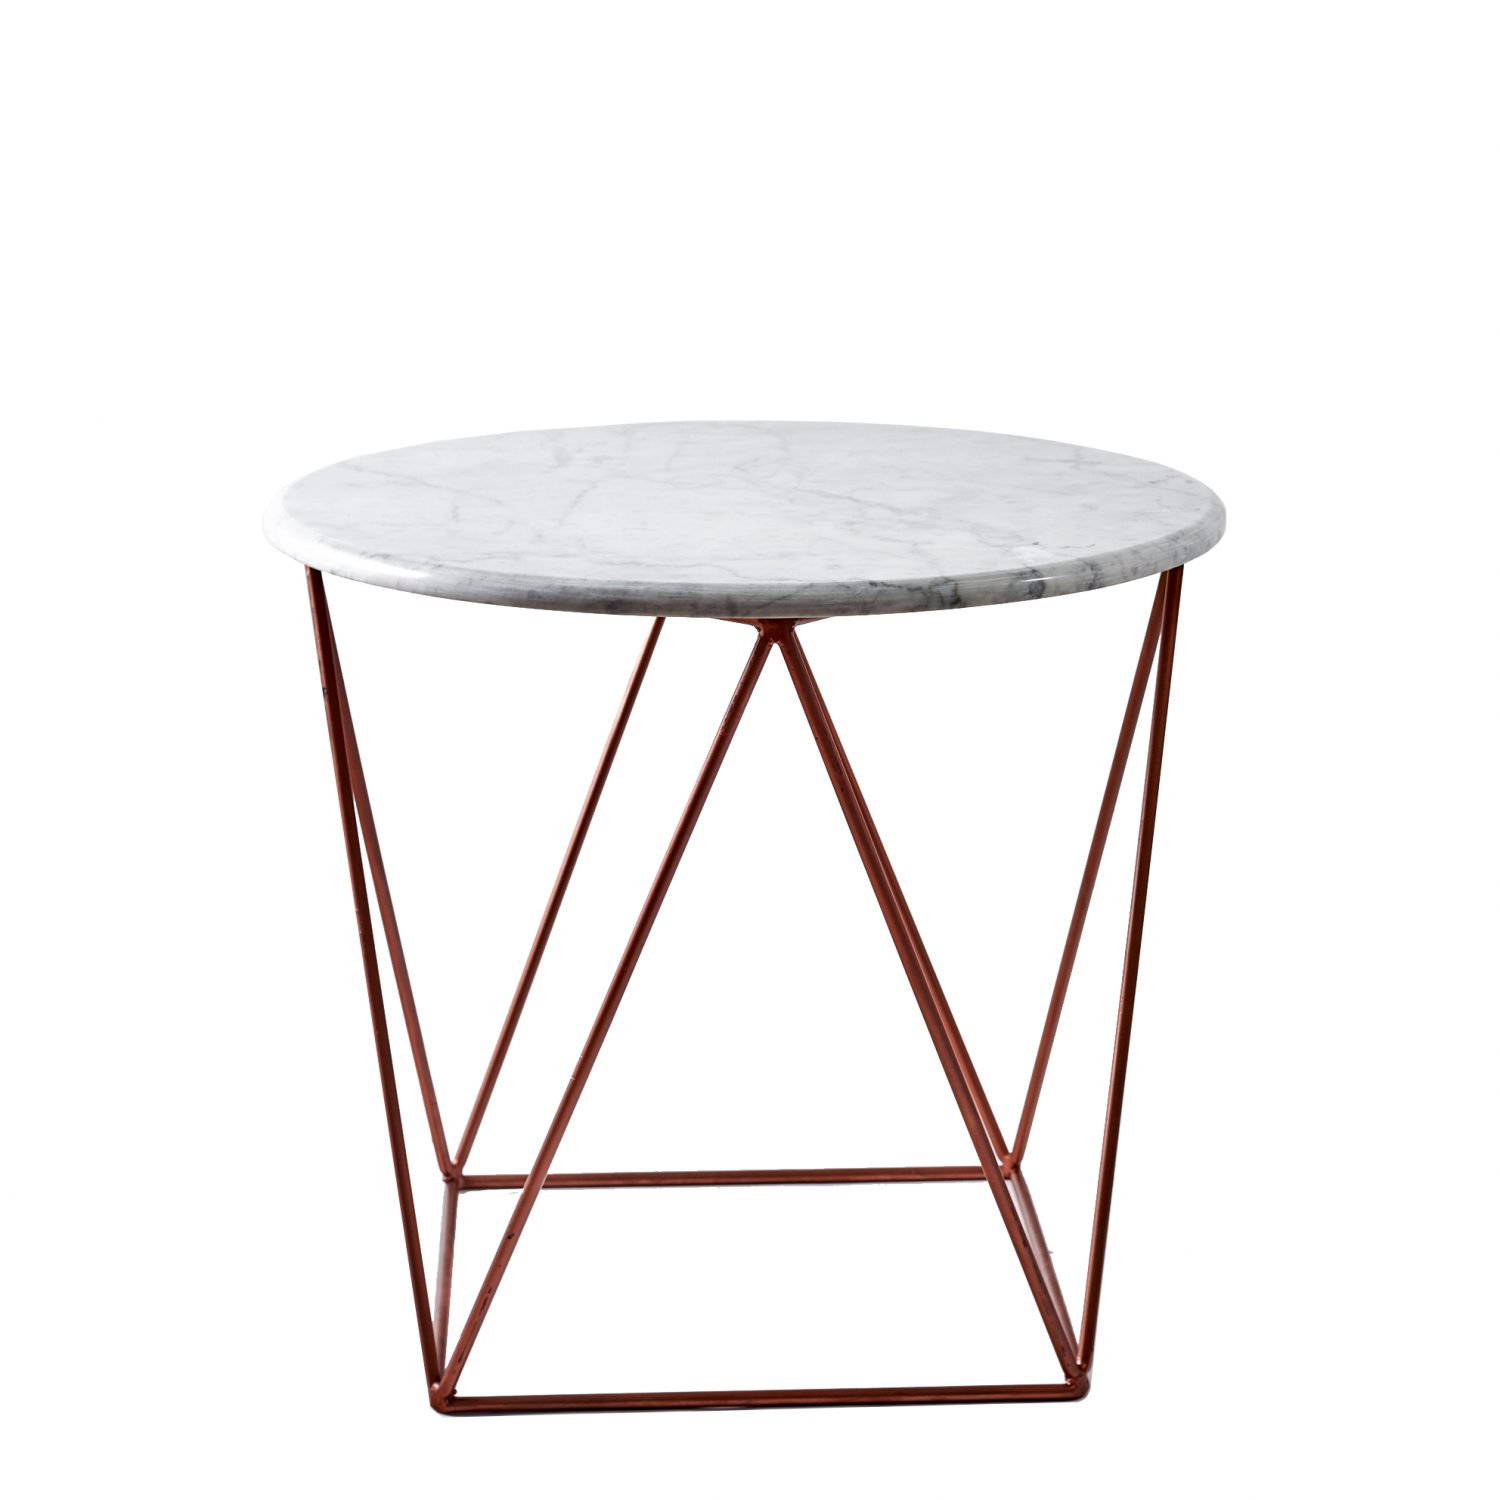 Tables > Blend Furniture